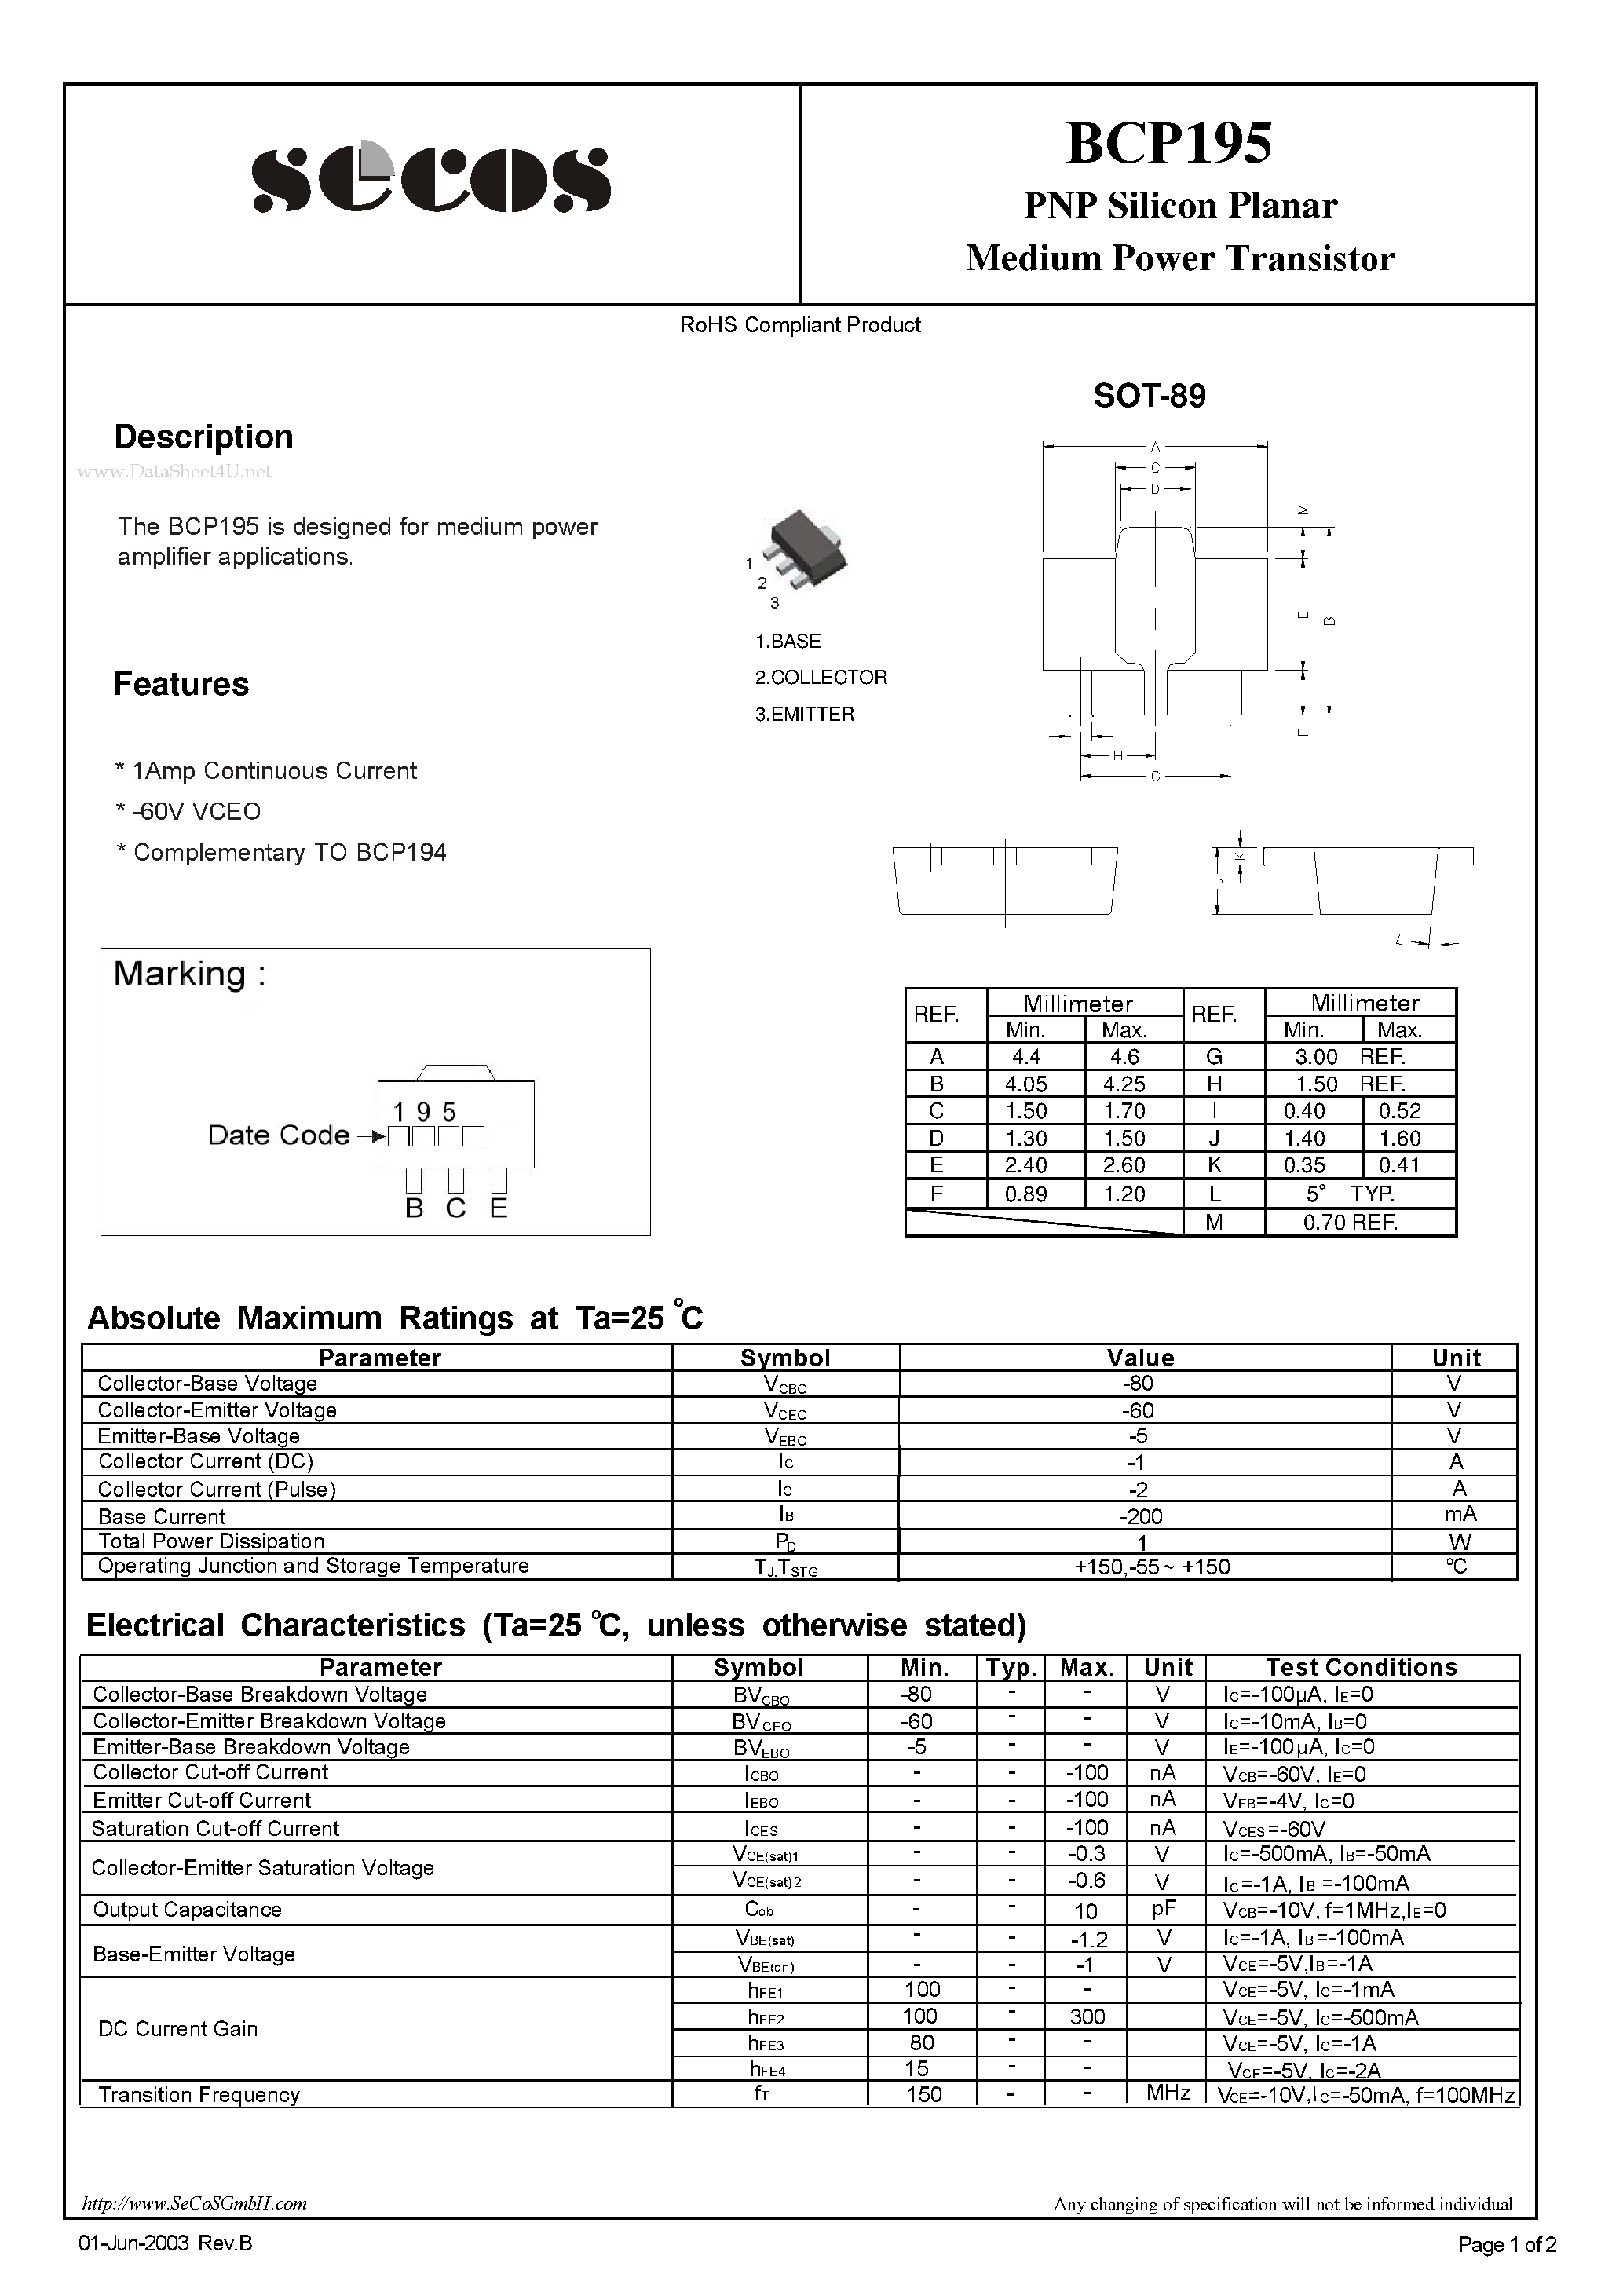 Даташит BCP195-Medium Power Transistor страница 1